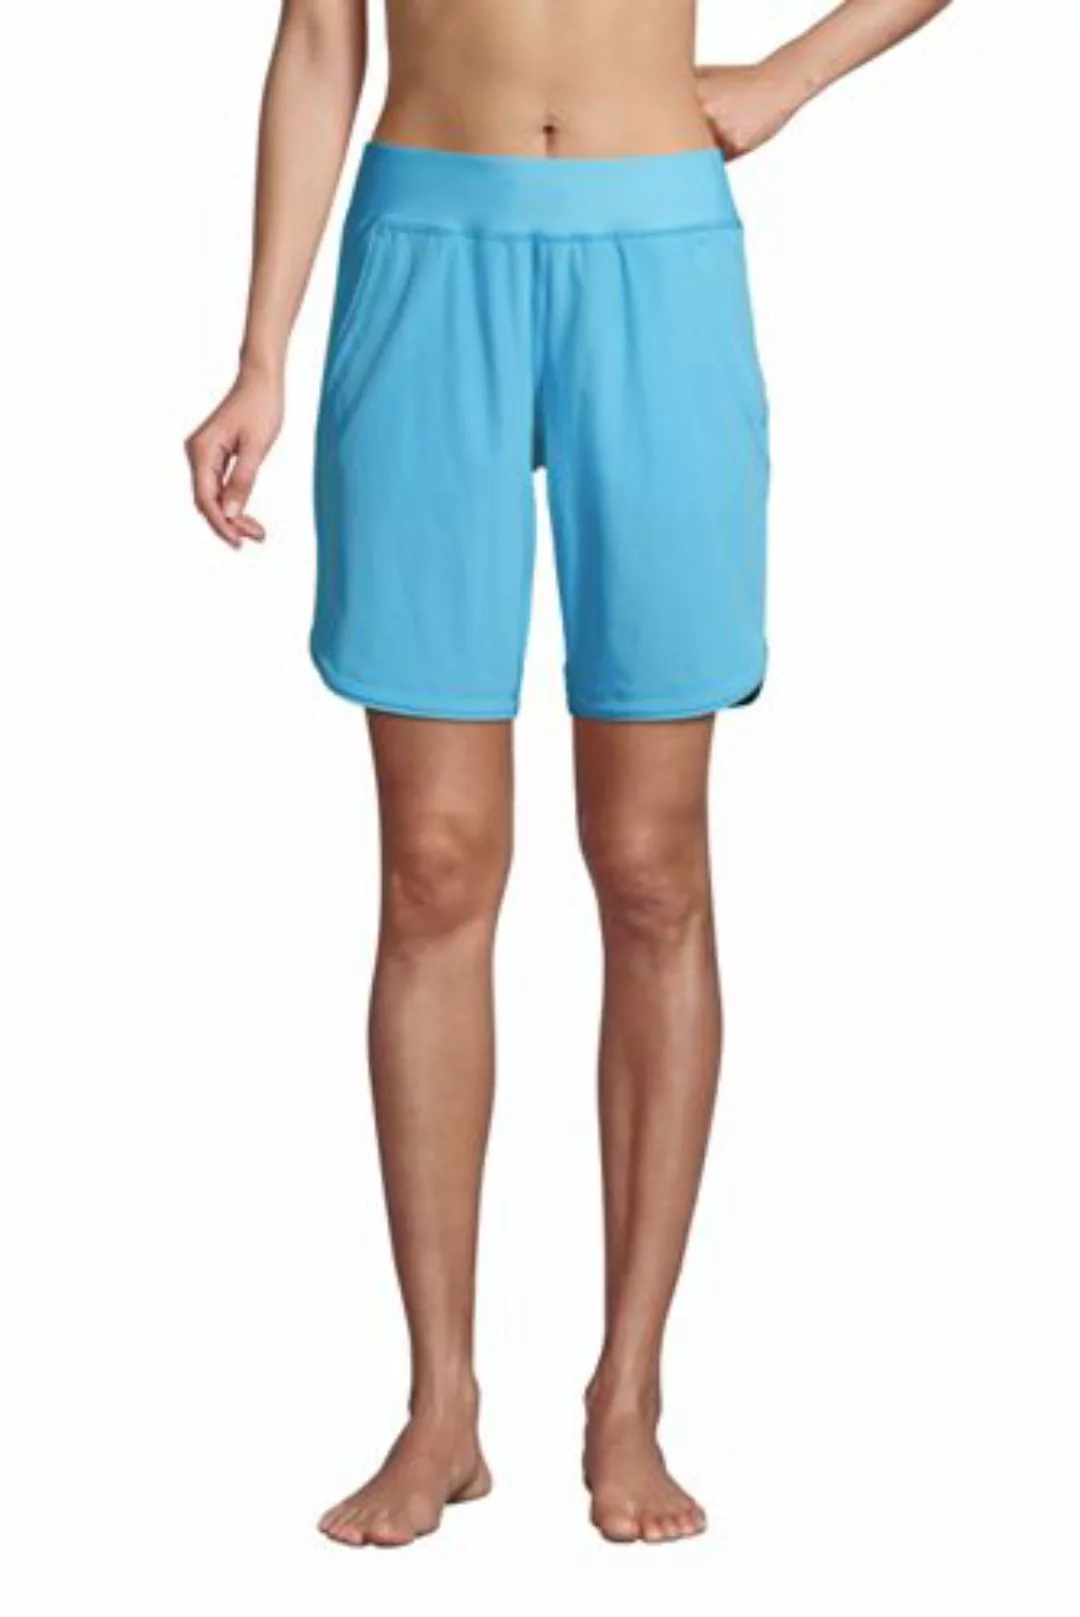 Badeshorts 22 cm, Damen, Größe: M Normal, Blau, Polyester-Mischung, by Land günstig online kaufen